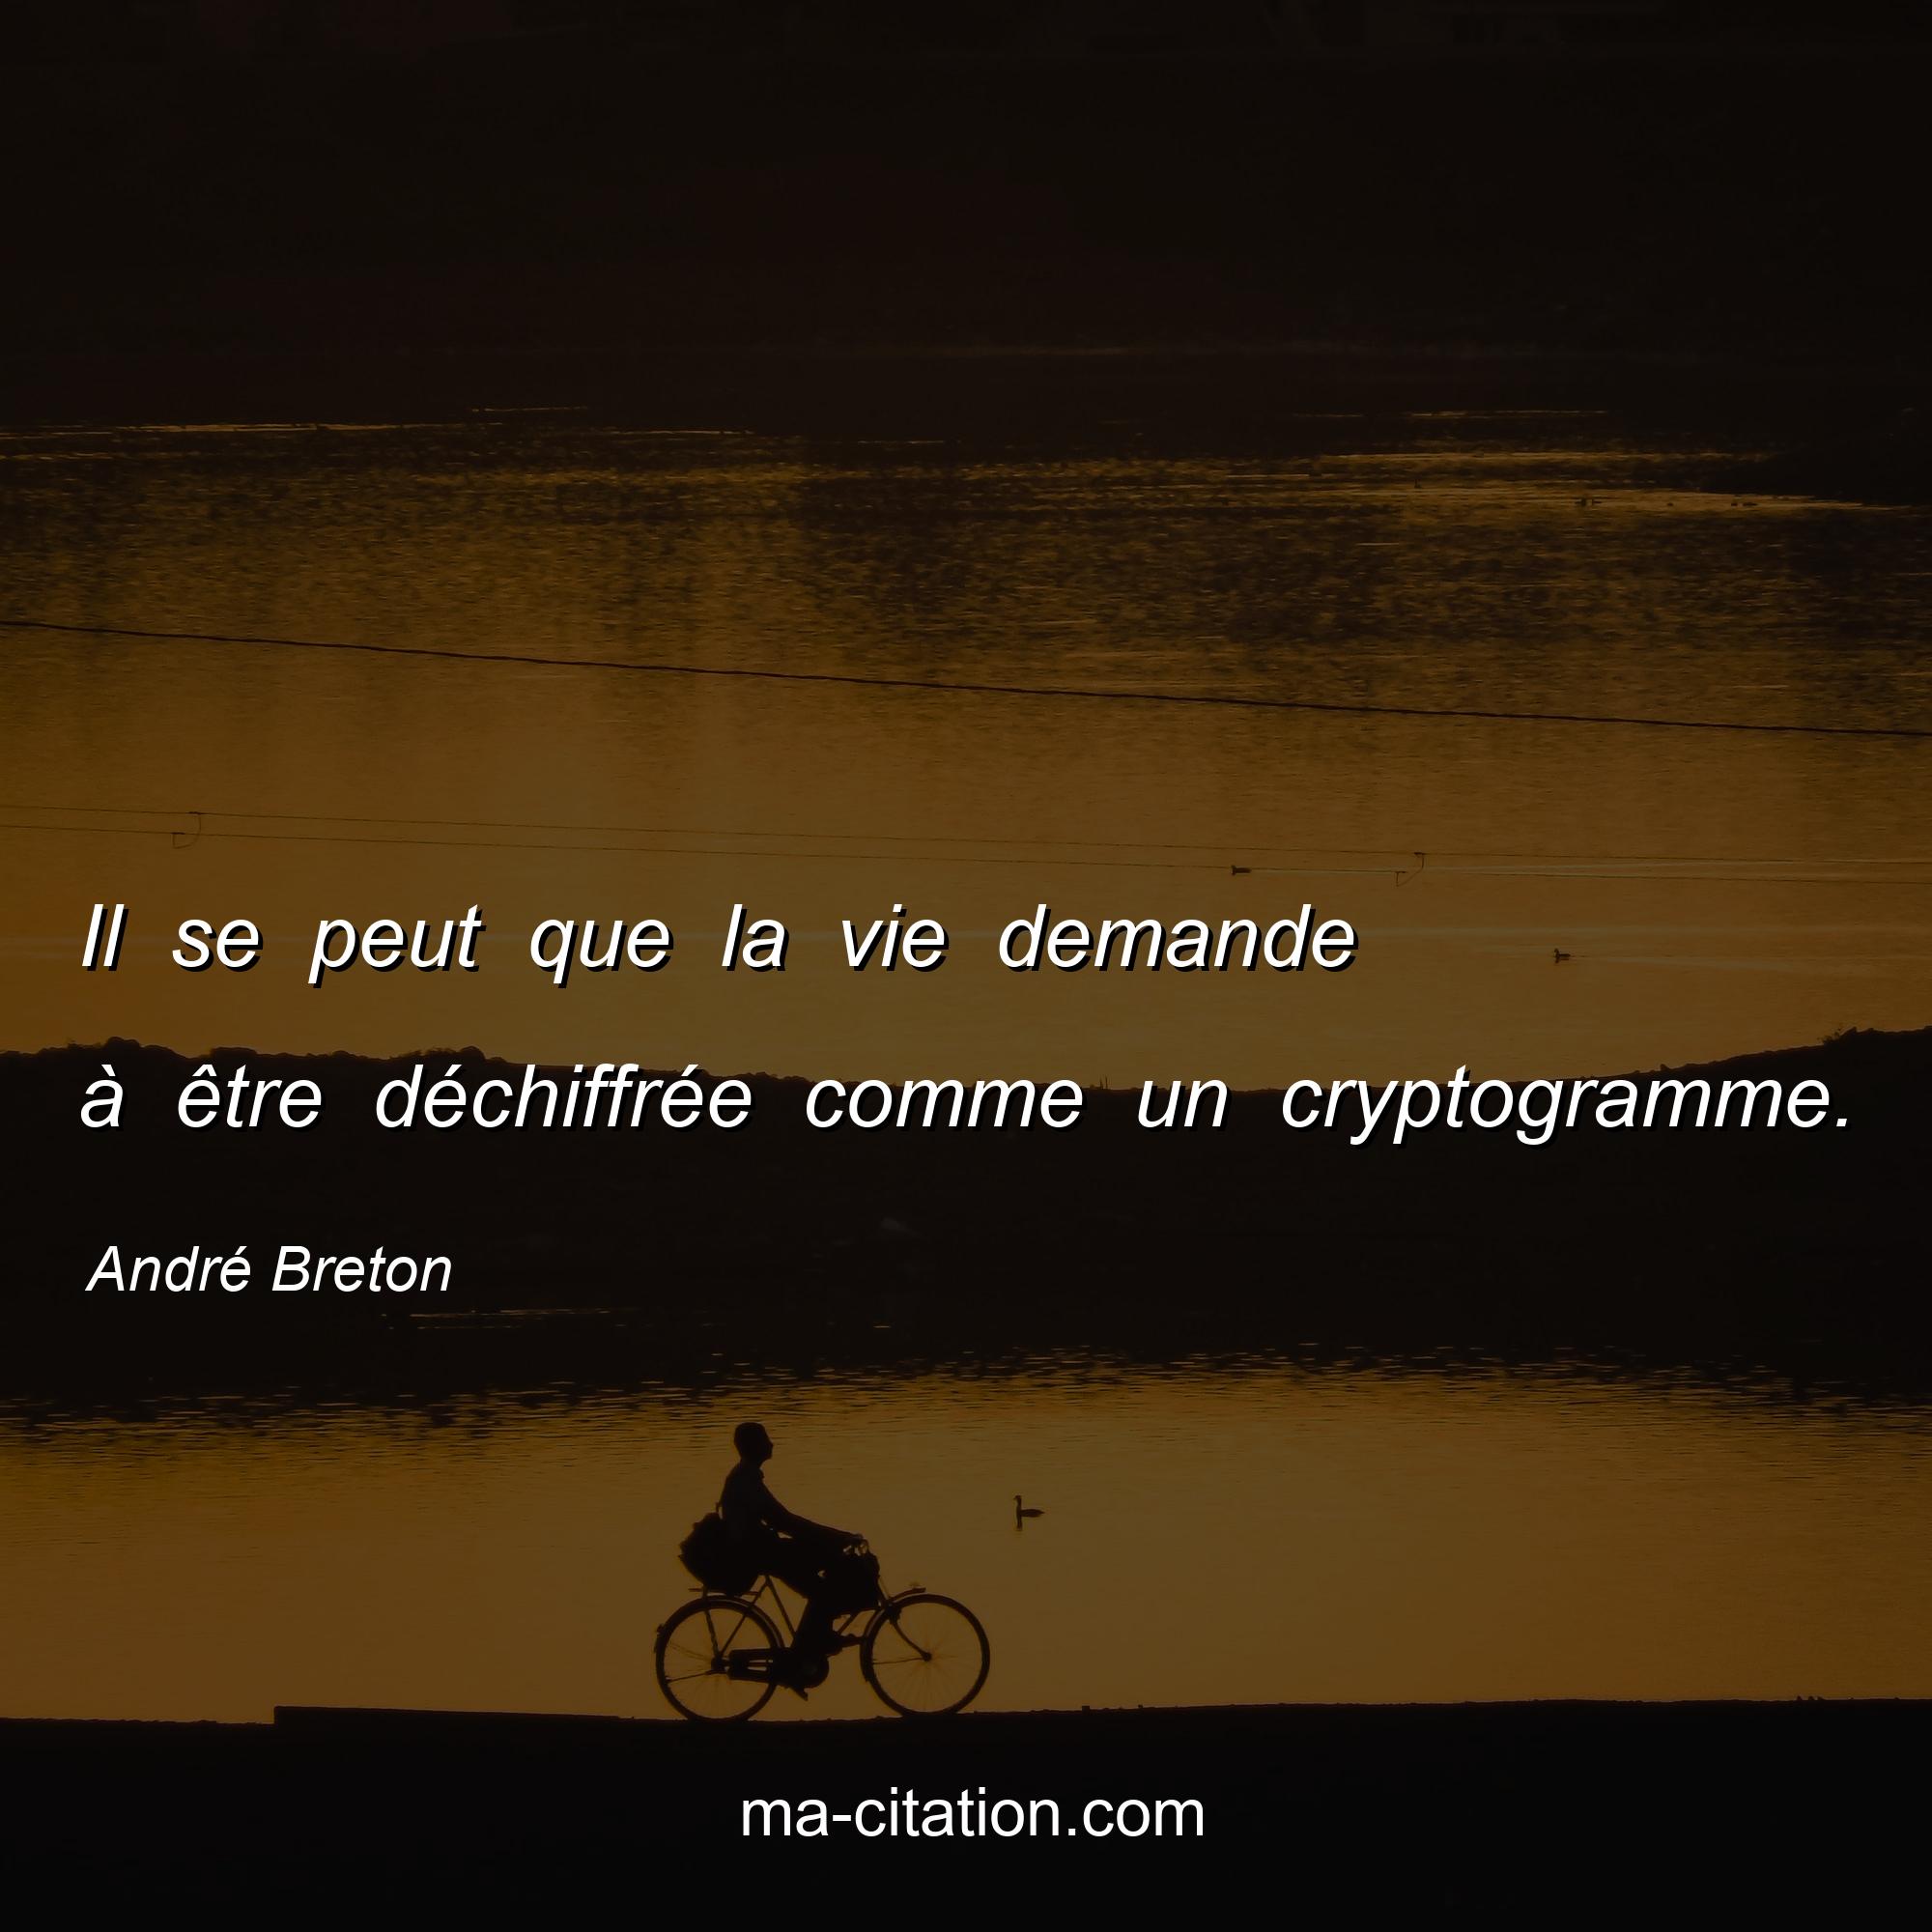 André Breton : Il se peut que la vie demande à être déchiffrée comme un cryptogramme.